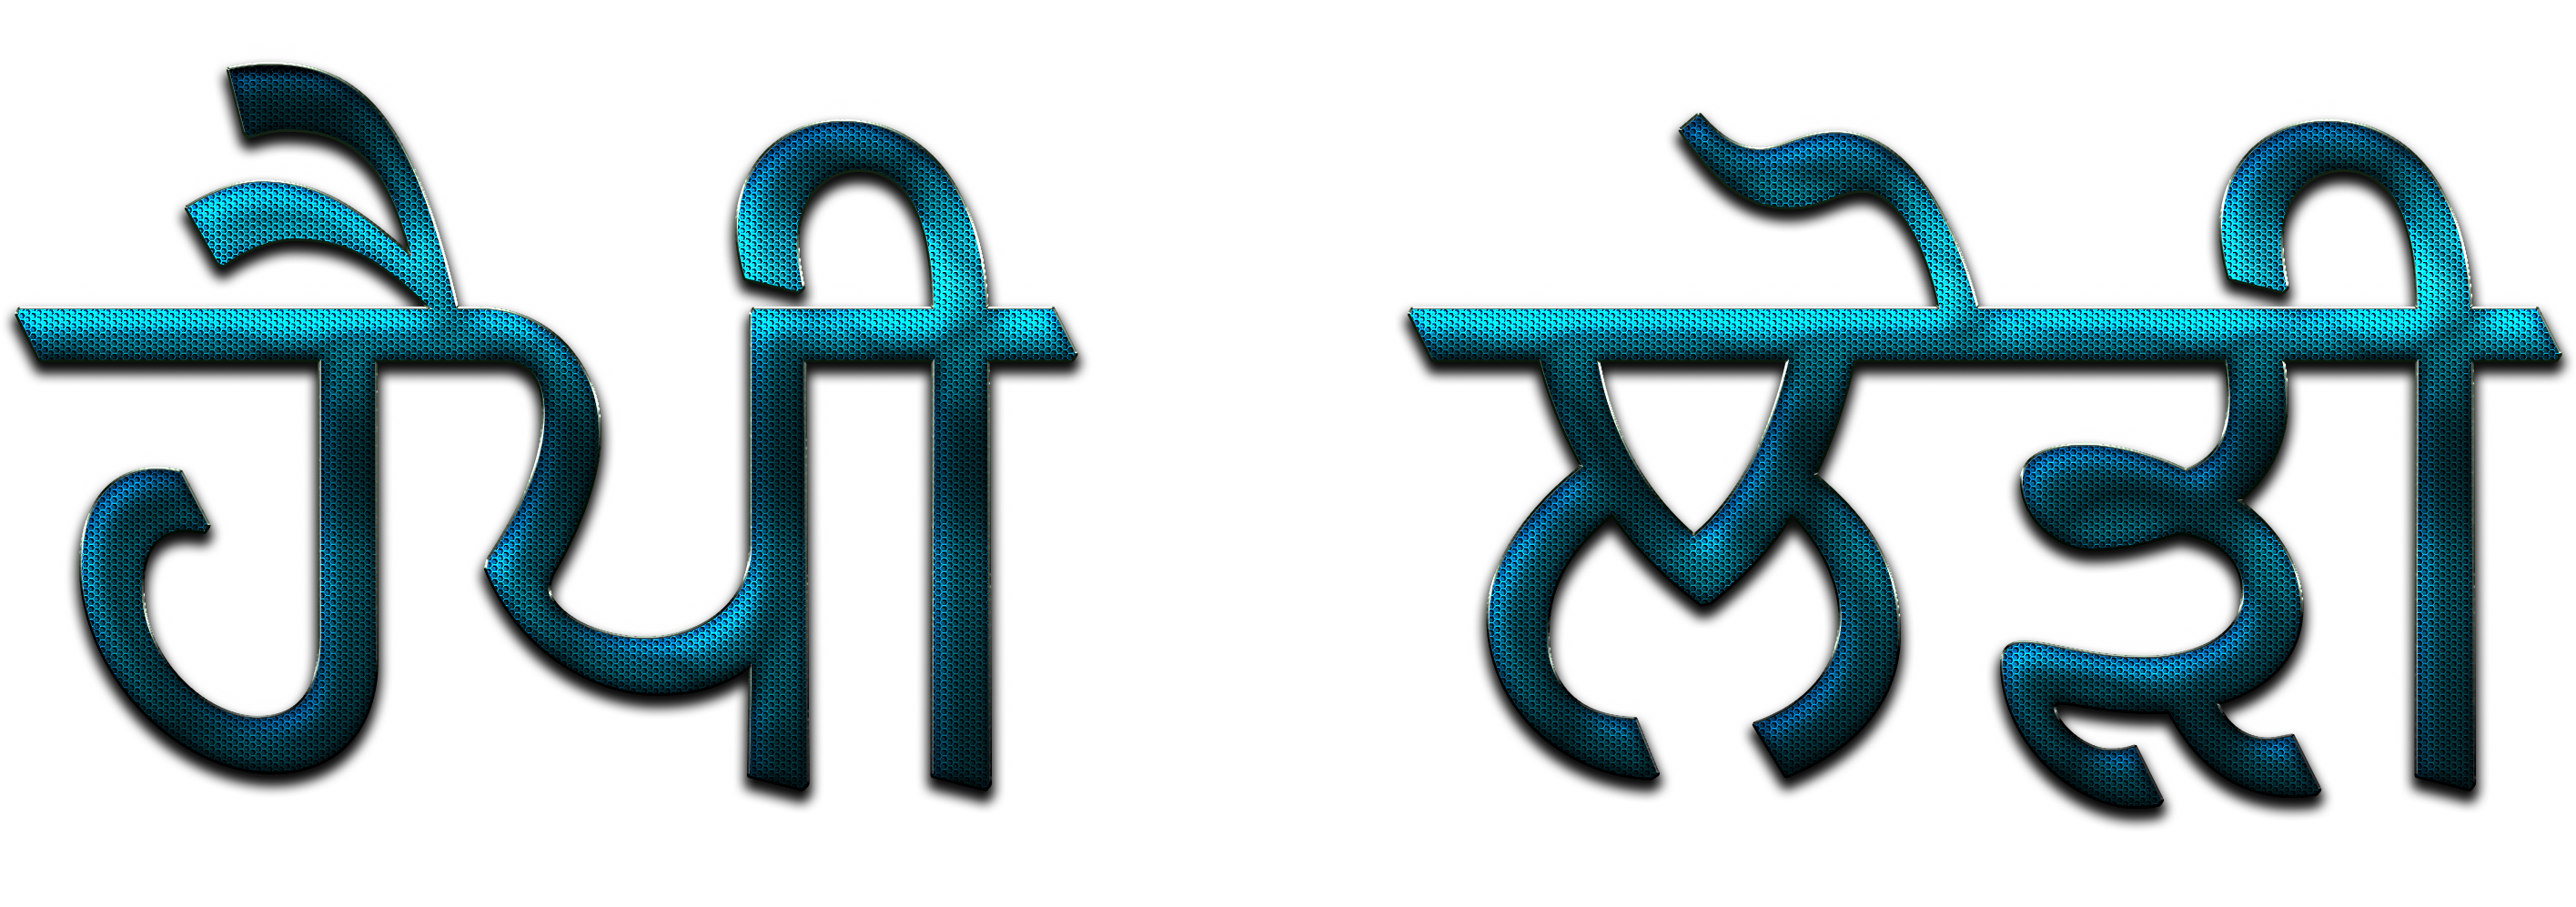 A Blue And Black Symbols